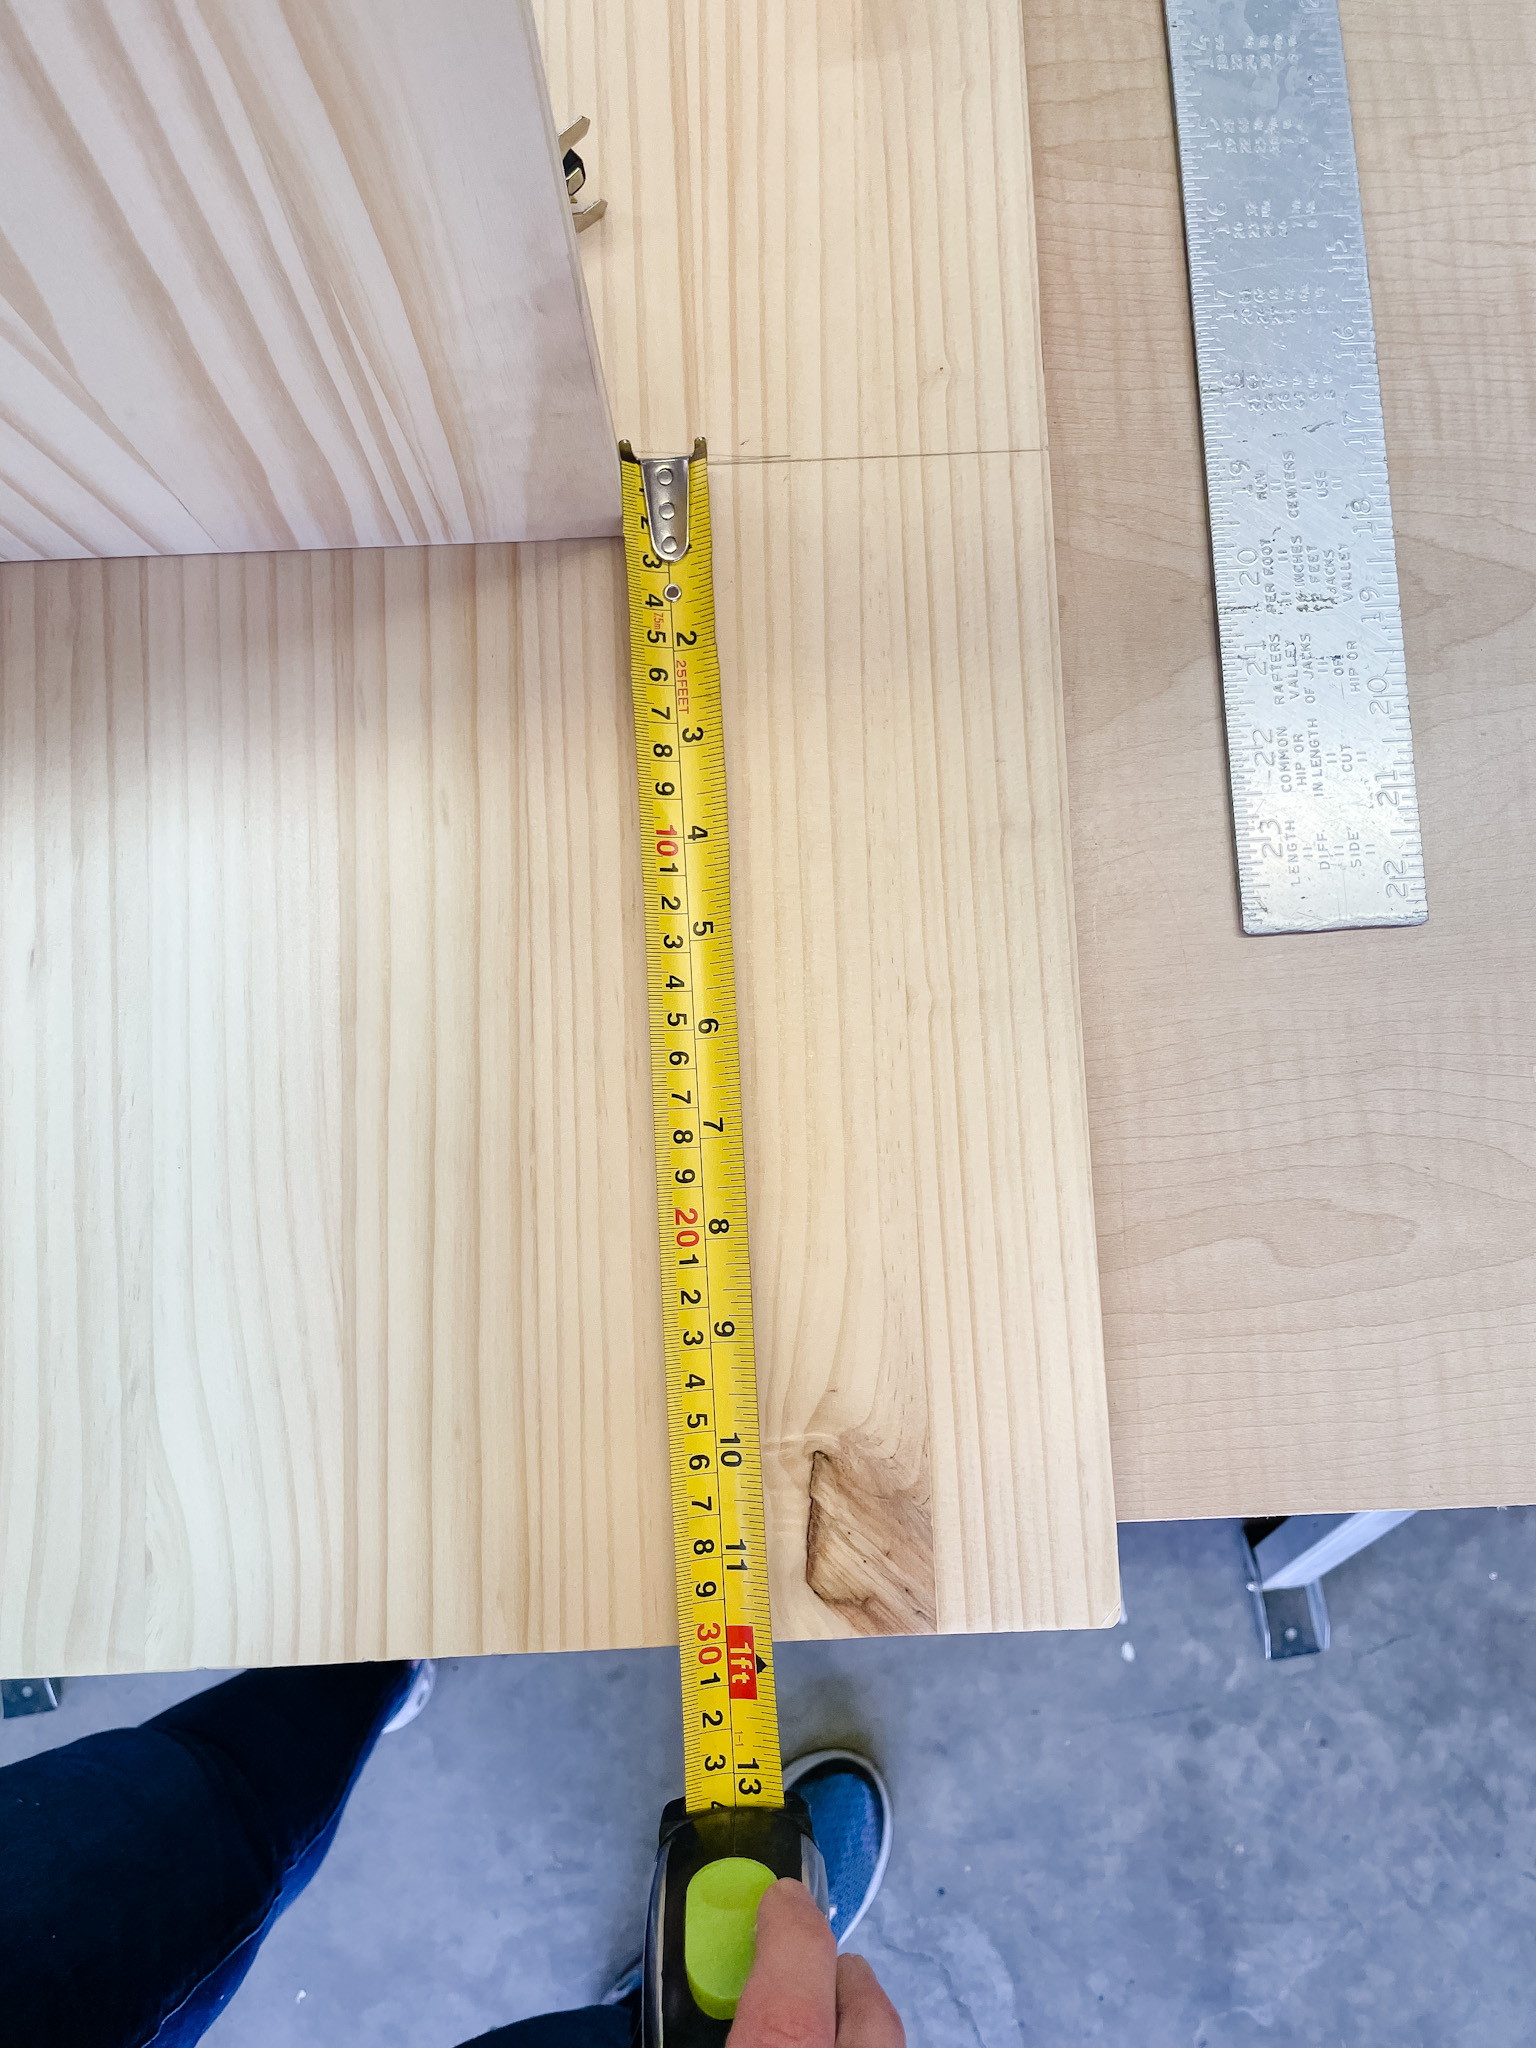 tape measure on wood